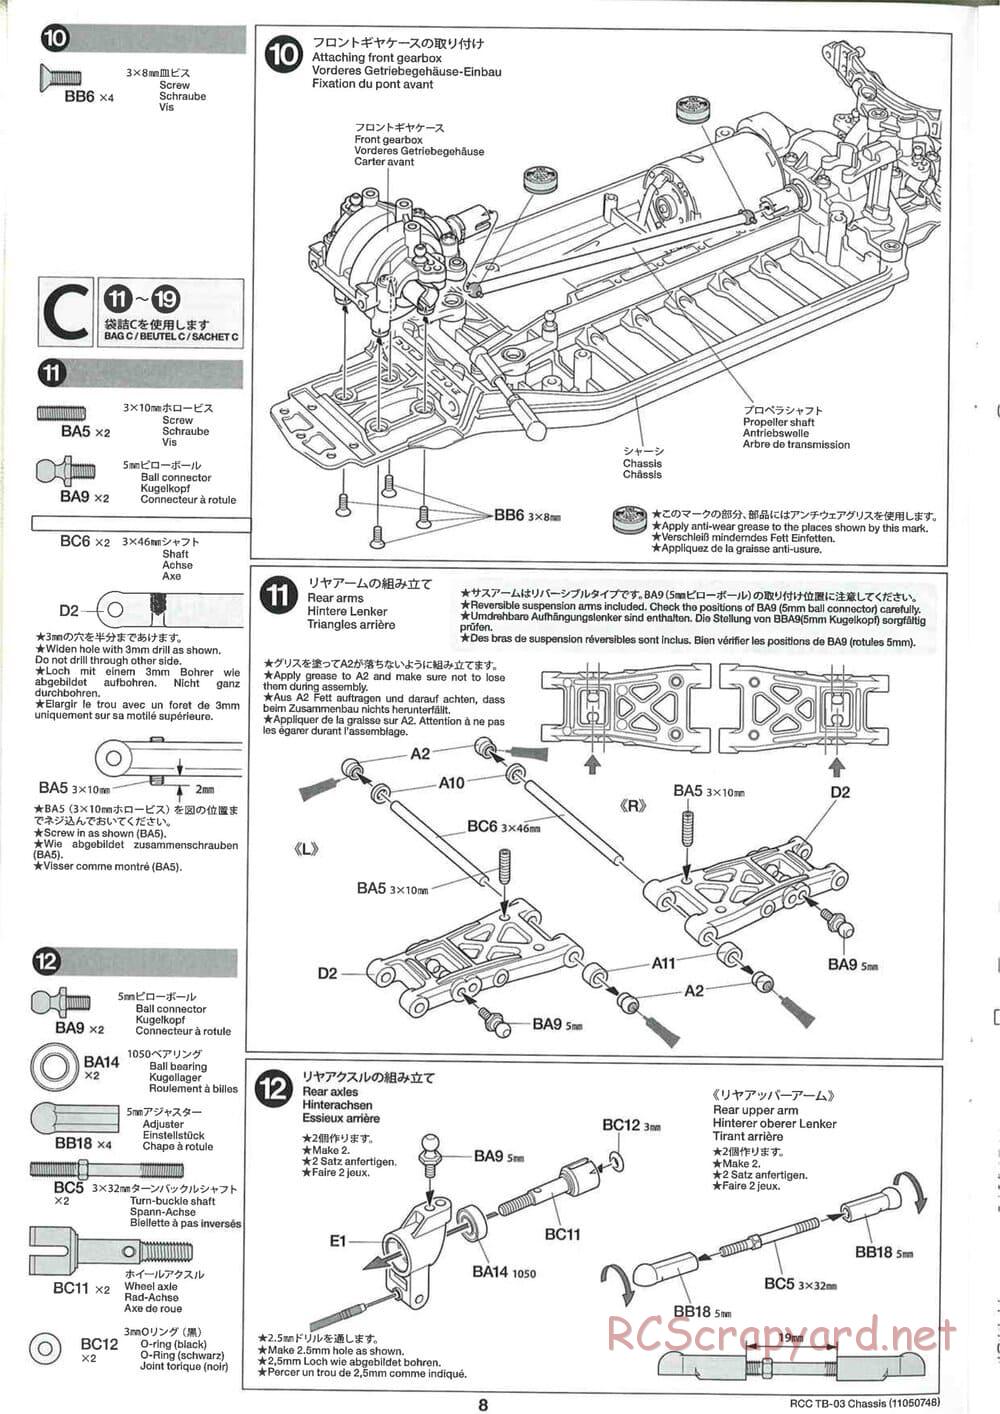 Tamiya - TB-03 Chassis - Manual - Page 8